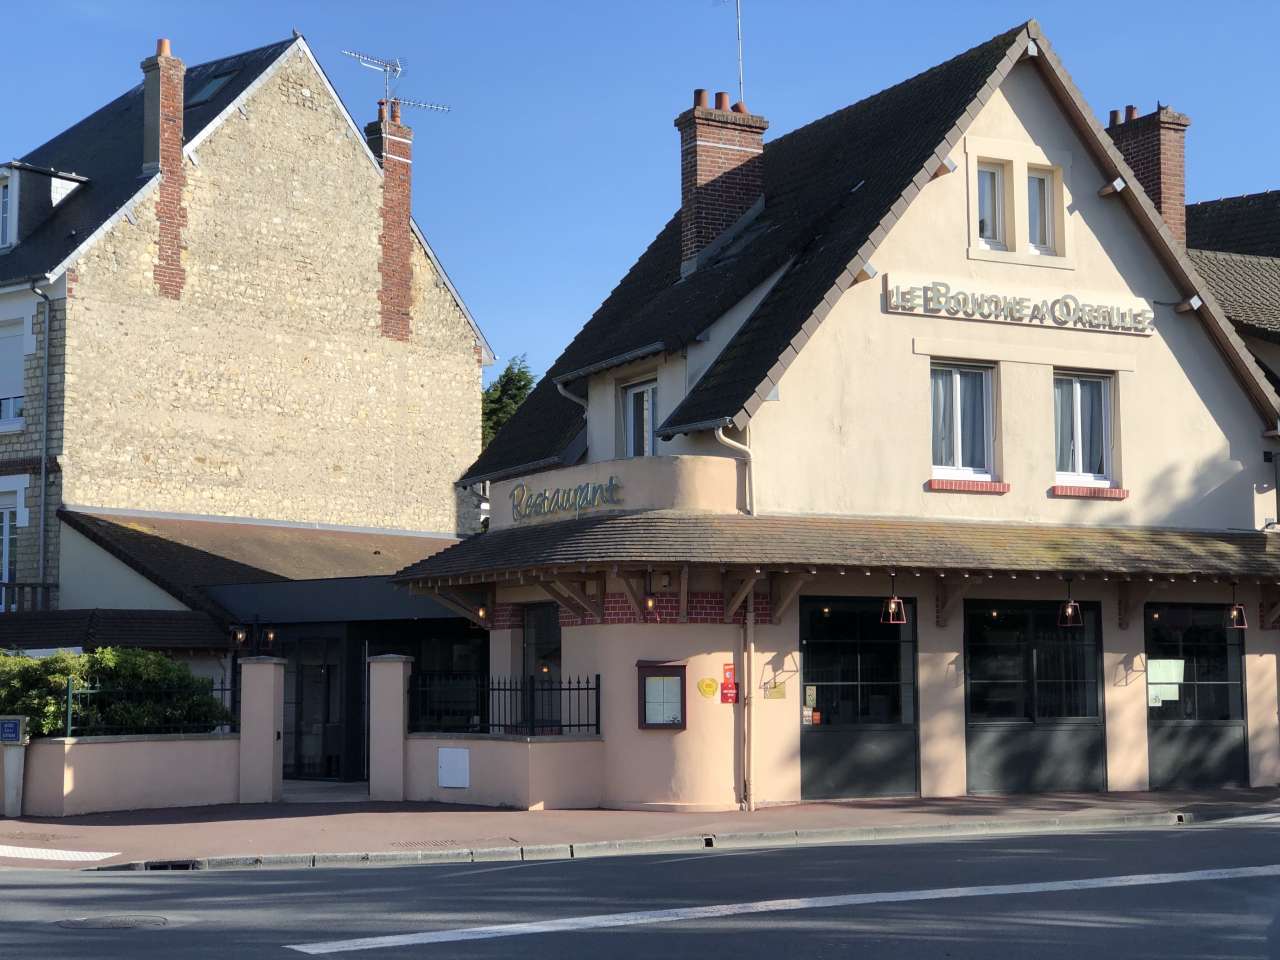 LE BOUCHE A OREILLE - Restaurant à Cabourg (14390) - Adresse et téléphone  sur l'annuaire Hoodspot